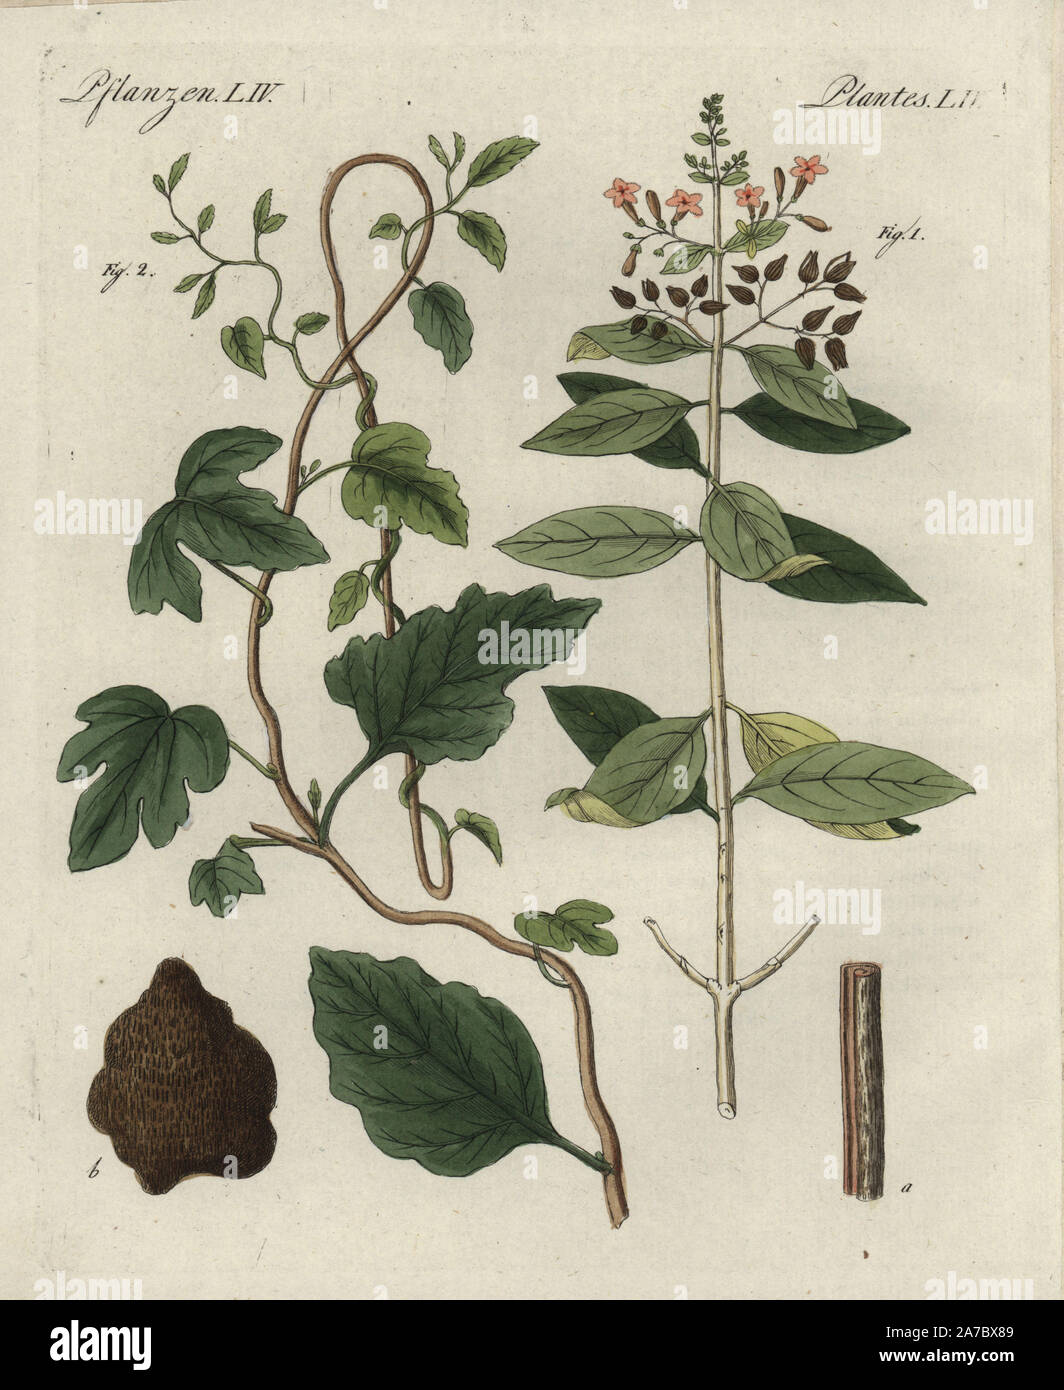 L'écorce de quinquina, la quinine arbre officinalis 1 et 2, l'Ipomoea purga gialappa montrant, feuille, fleur, et de l'écorce. Coloriée à la gravure sur cuivre de Bertuch's 'Bilderbuch fur Kinder" (Livre d'images pour les enfants), Weimar, 1798. Johann Friedrich Bertuch (1747-1822) était un éditeur allemand et l'homme des arts le plus célèbre pour son encyclopédie 12 volumes pour les enfants illustrés de 1 200 plaques gravées sur l'histoire naturelle, de la science, le costume, la mythologie, etc., publiés à partir de 1790-1830. Banque D'Images